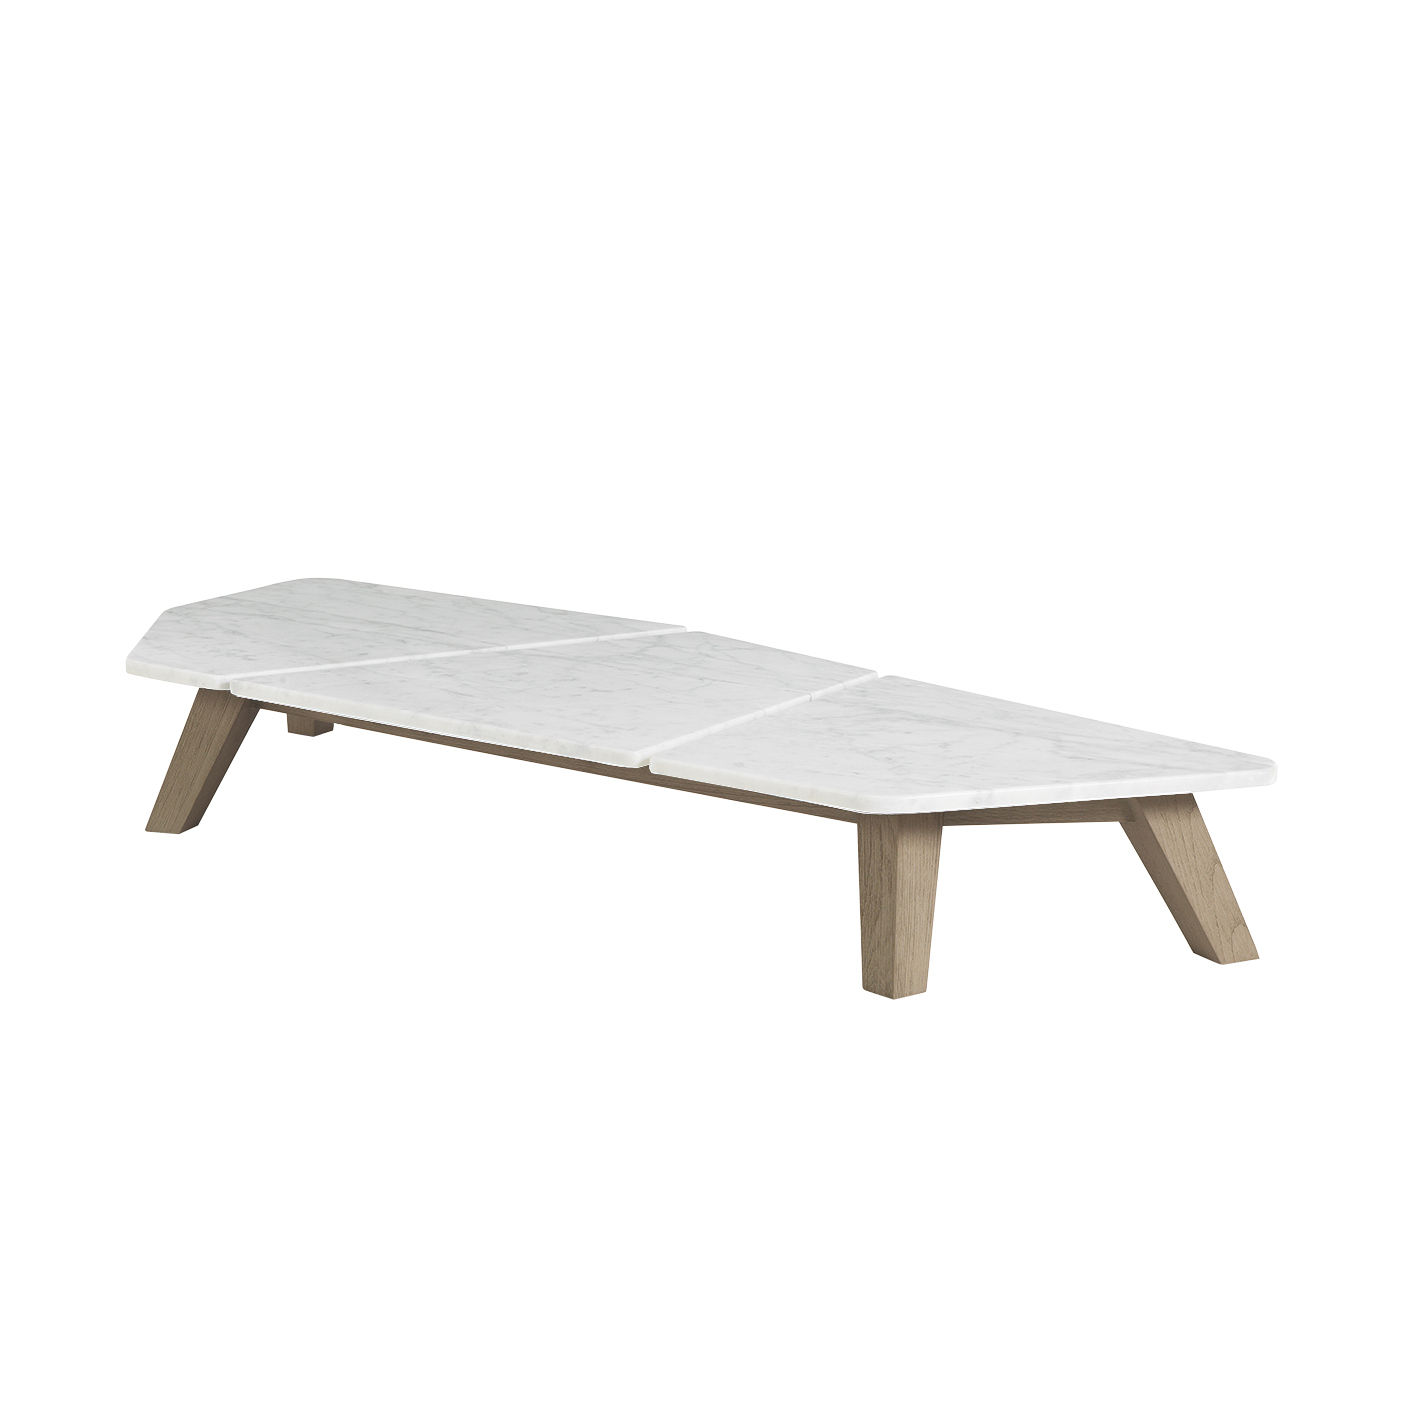 Table basse Rafael Large / 170 x 70 cm - Marbre & teck décapé - Ethimo blanc en pierre